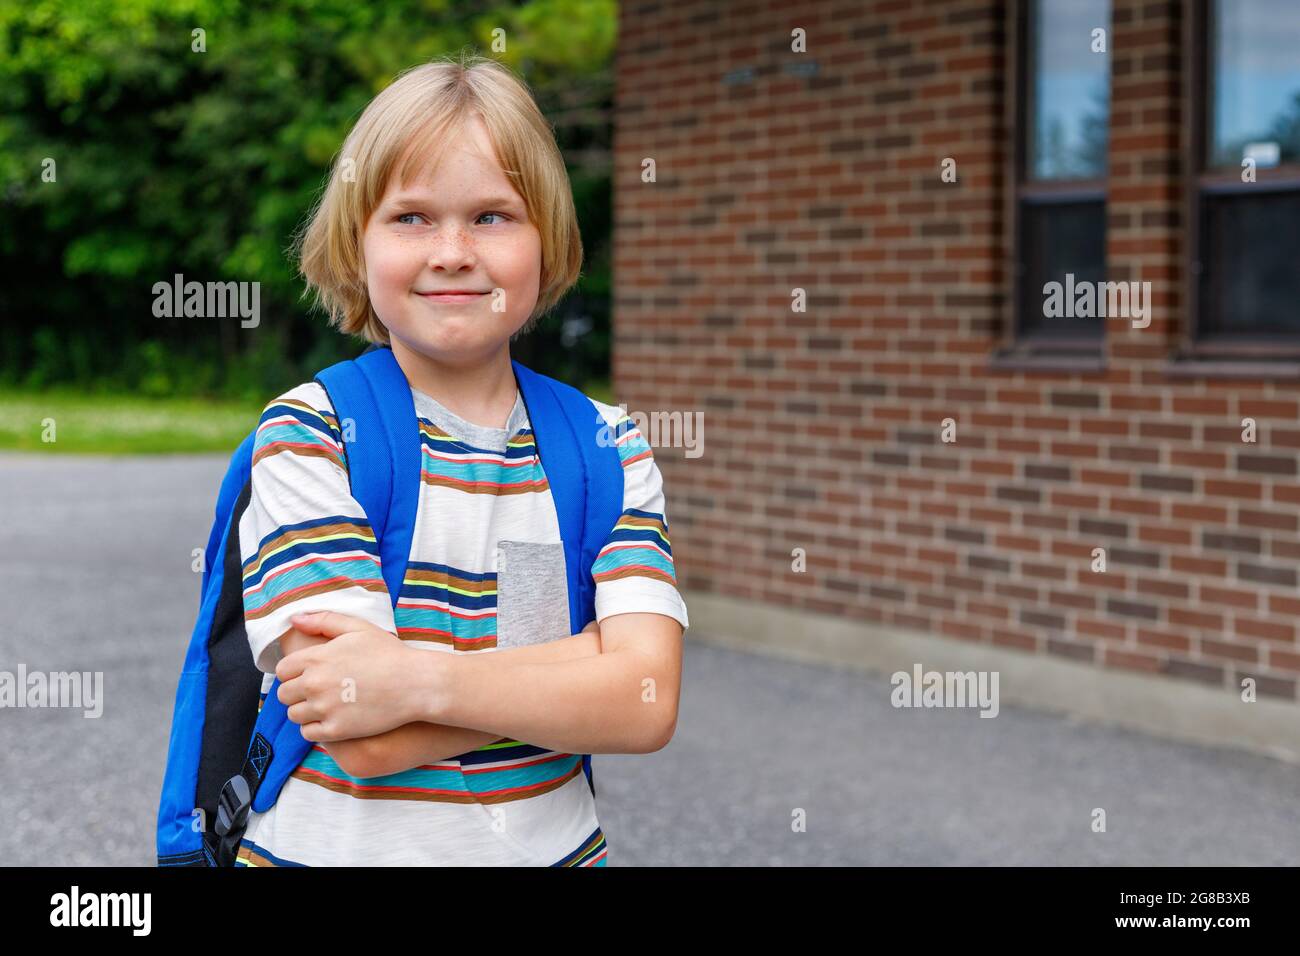 Schönes fröhliches Kind in der Nähe des Schulgebäudes auf dem Schulhof. Kleine blonde Studentin mit blauem Rucksack. Zurück zum Schulkonzept. Stockfoto